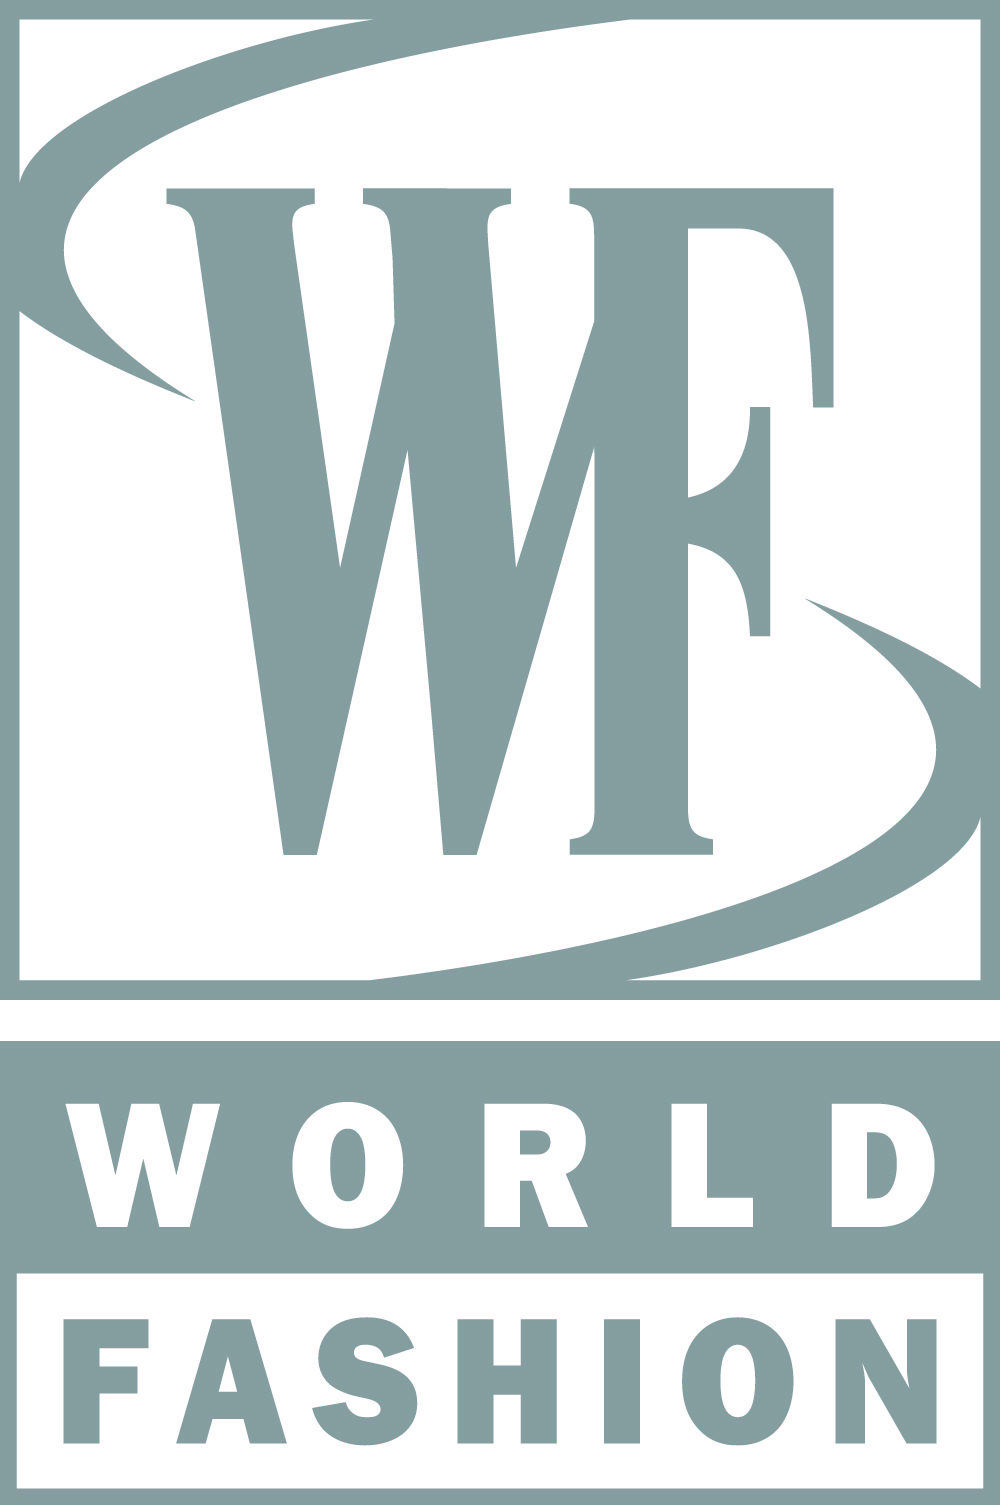 Channel Fashion Logo - World Fashion